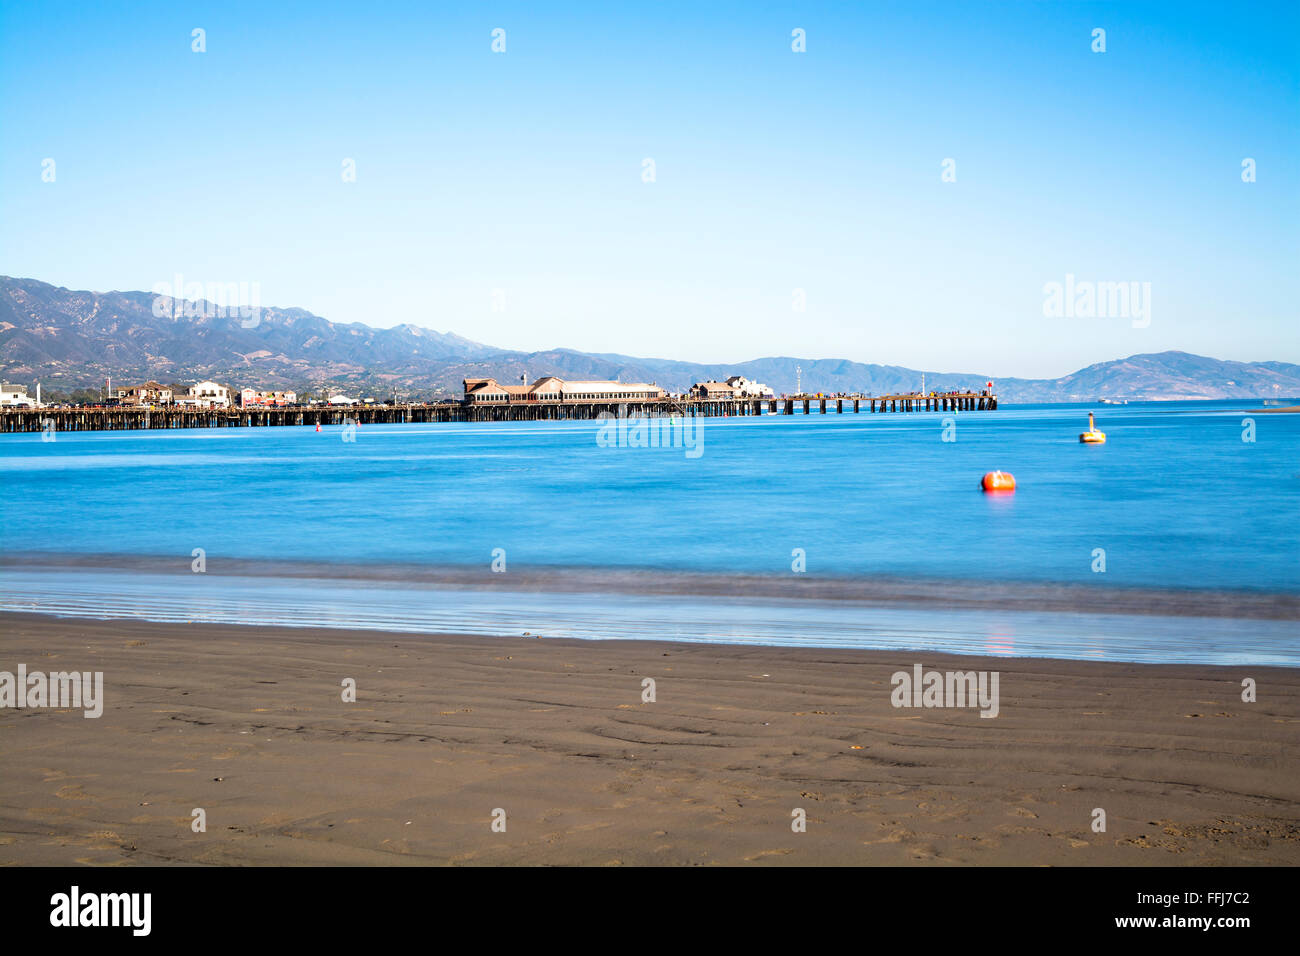 Bild von einer langen Belichtungszeit in Santa Barbara Hafen Kalifornien mit berühmten Stearns Wharf Futter das blaue Wasser. Stockfoto